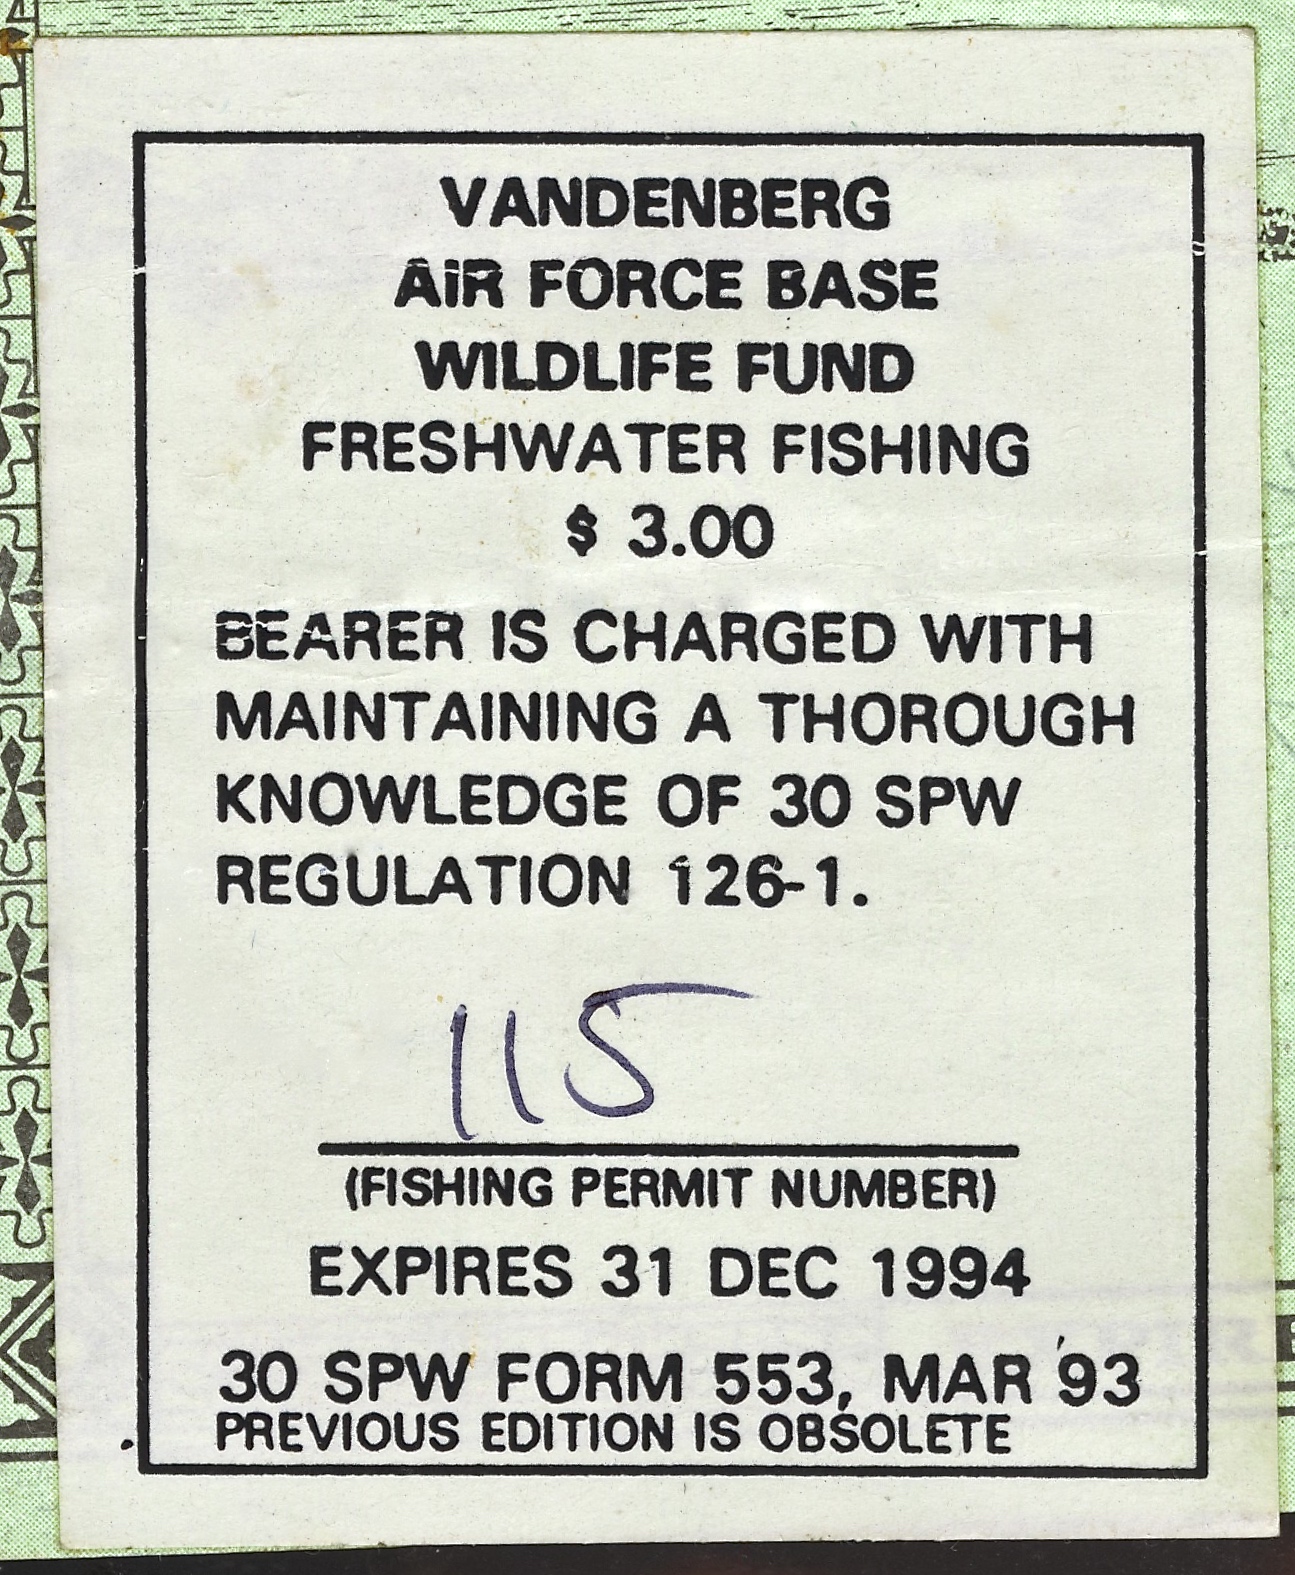 1993-94 VAFB Fishing